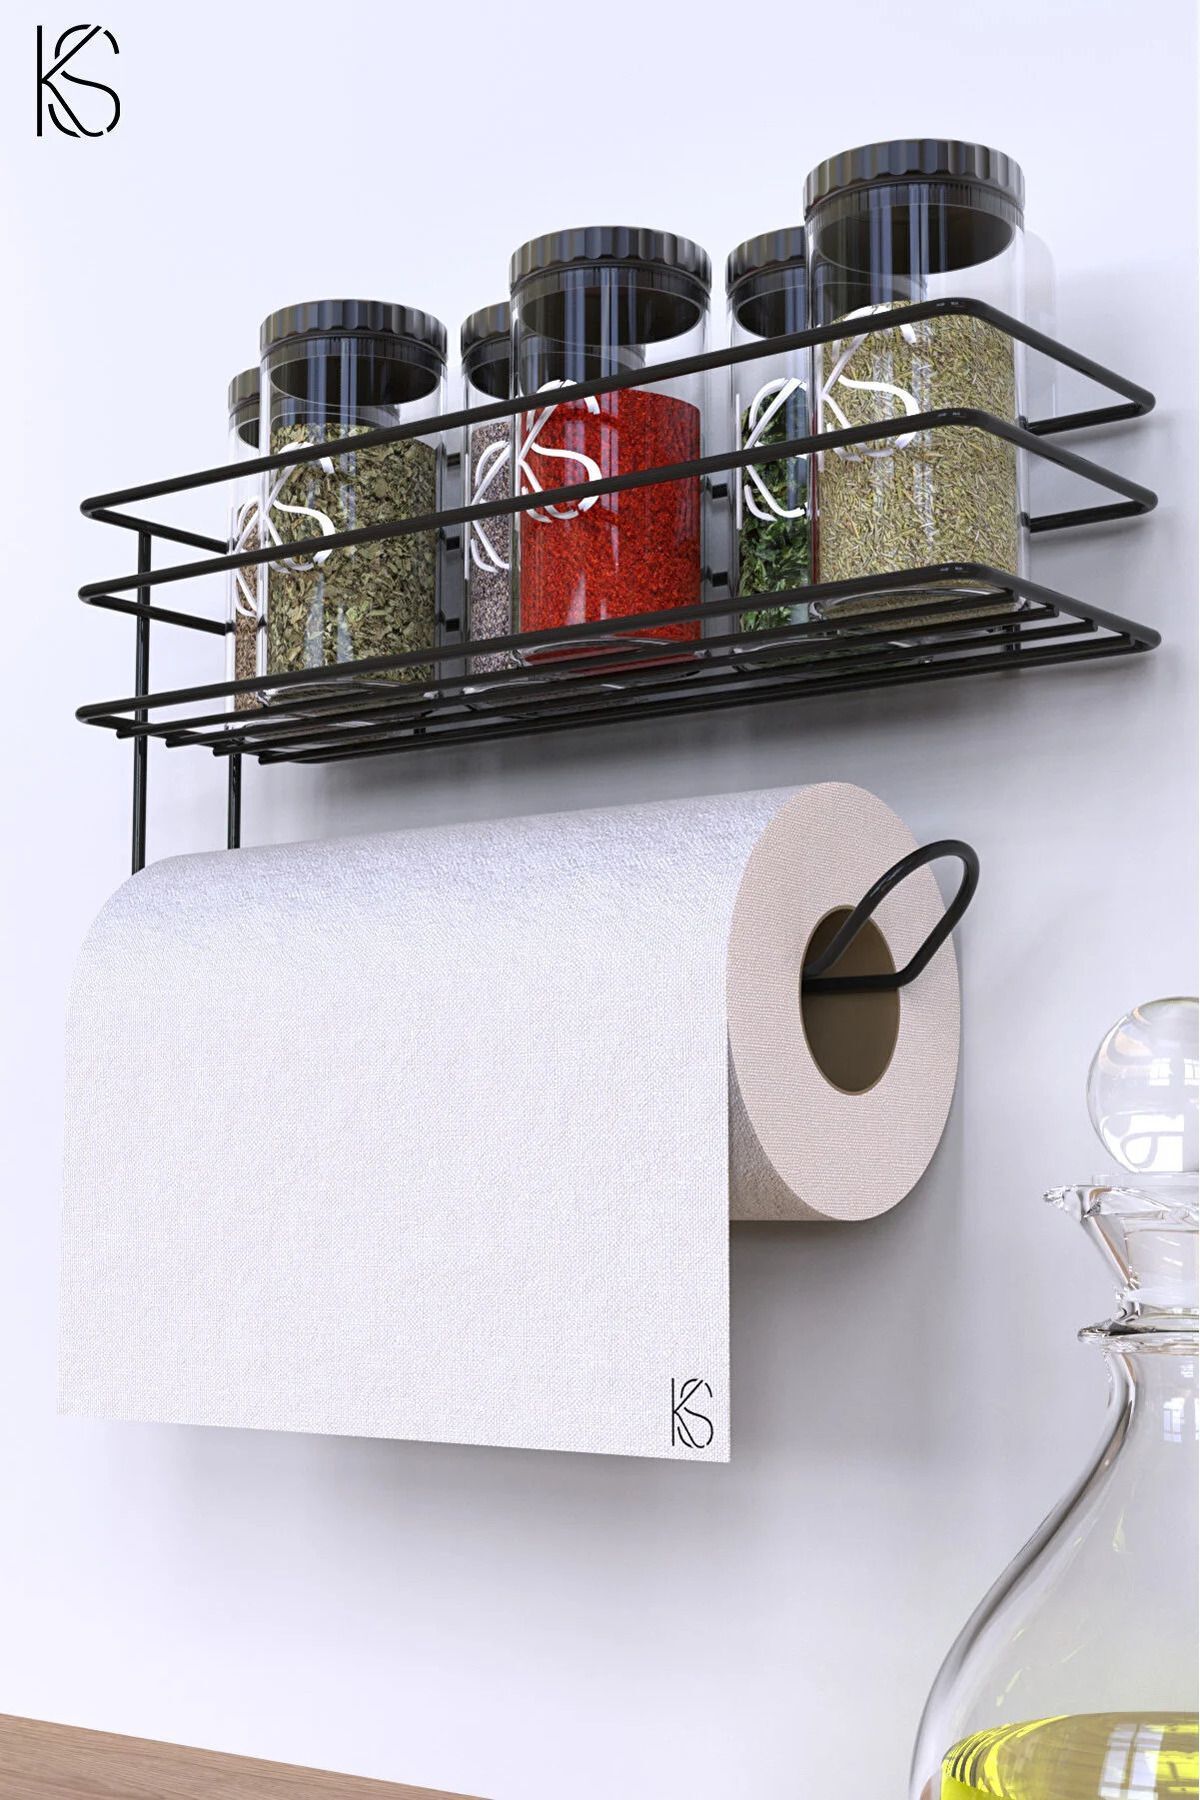 KARTEYA Yapışkanlı Raflı Kağıt Rulo Havluluk Peçetelik Havlu Kağıtlık Siyah Banyo Mutfak Düzenleyici Raf